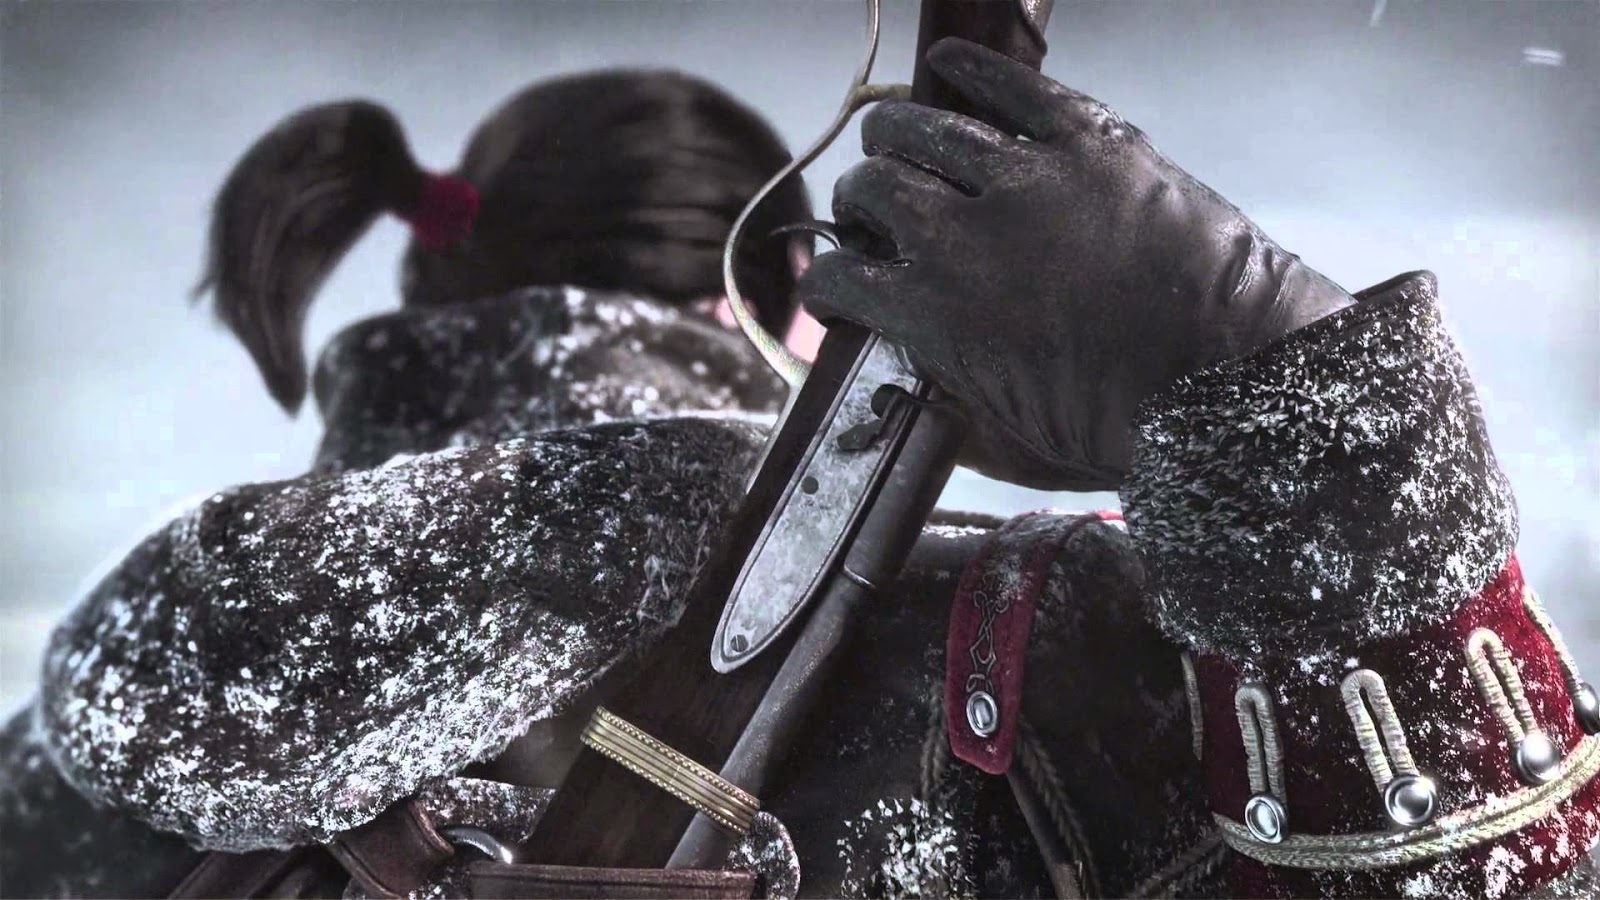 Análise: Assassin's Creed Rogue (PS3/X360) dá a cartada final no